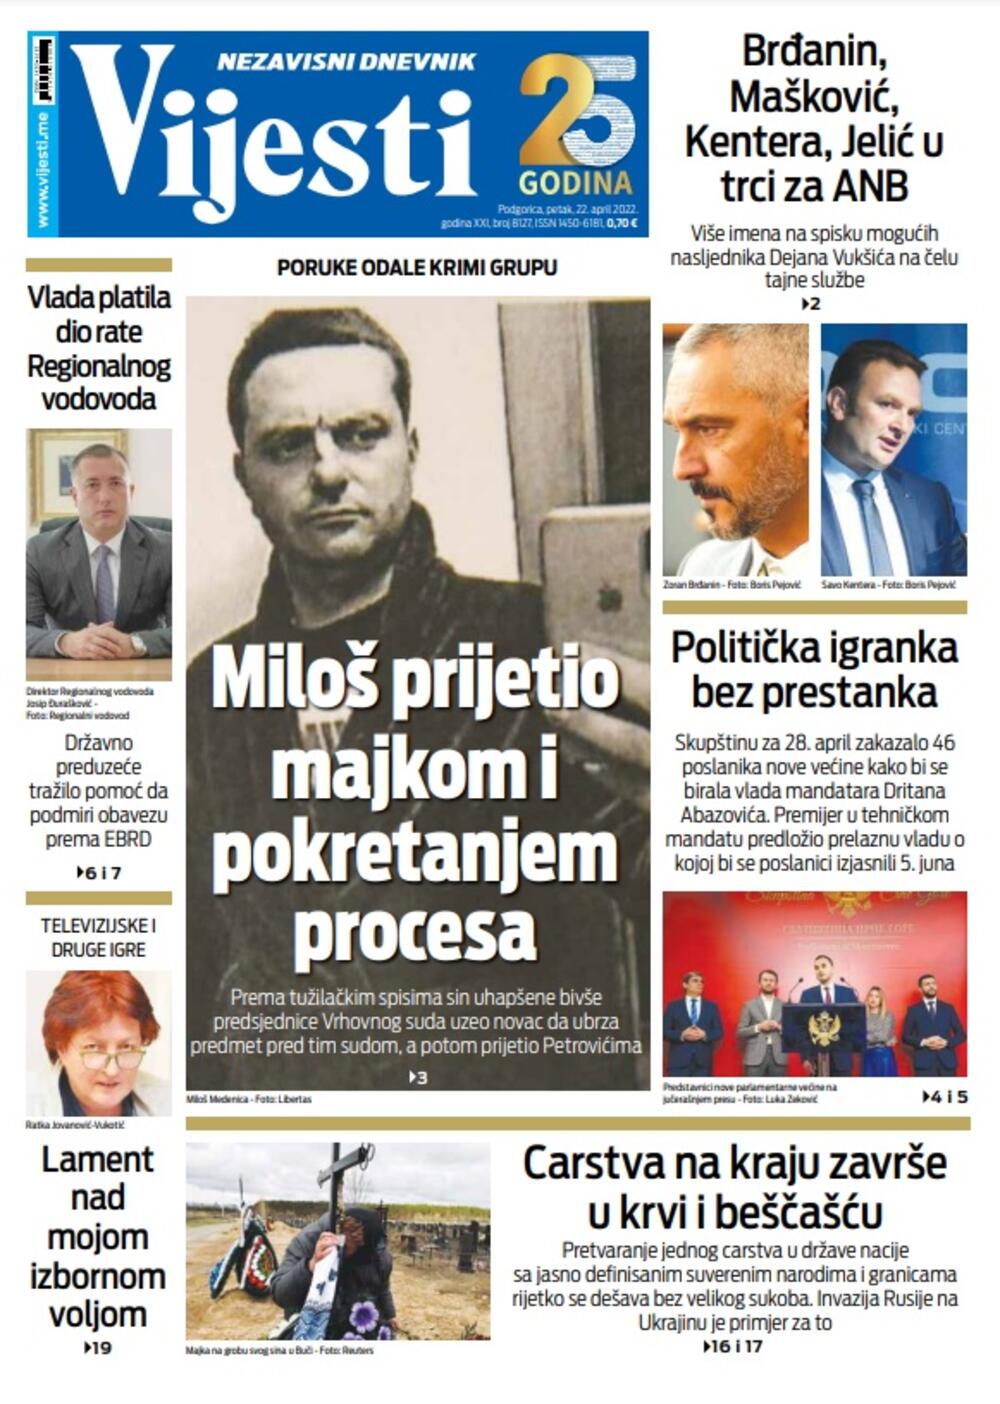 Naslovna strana "Vijesti" za 22. april 2022., Foto: Vijesti